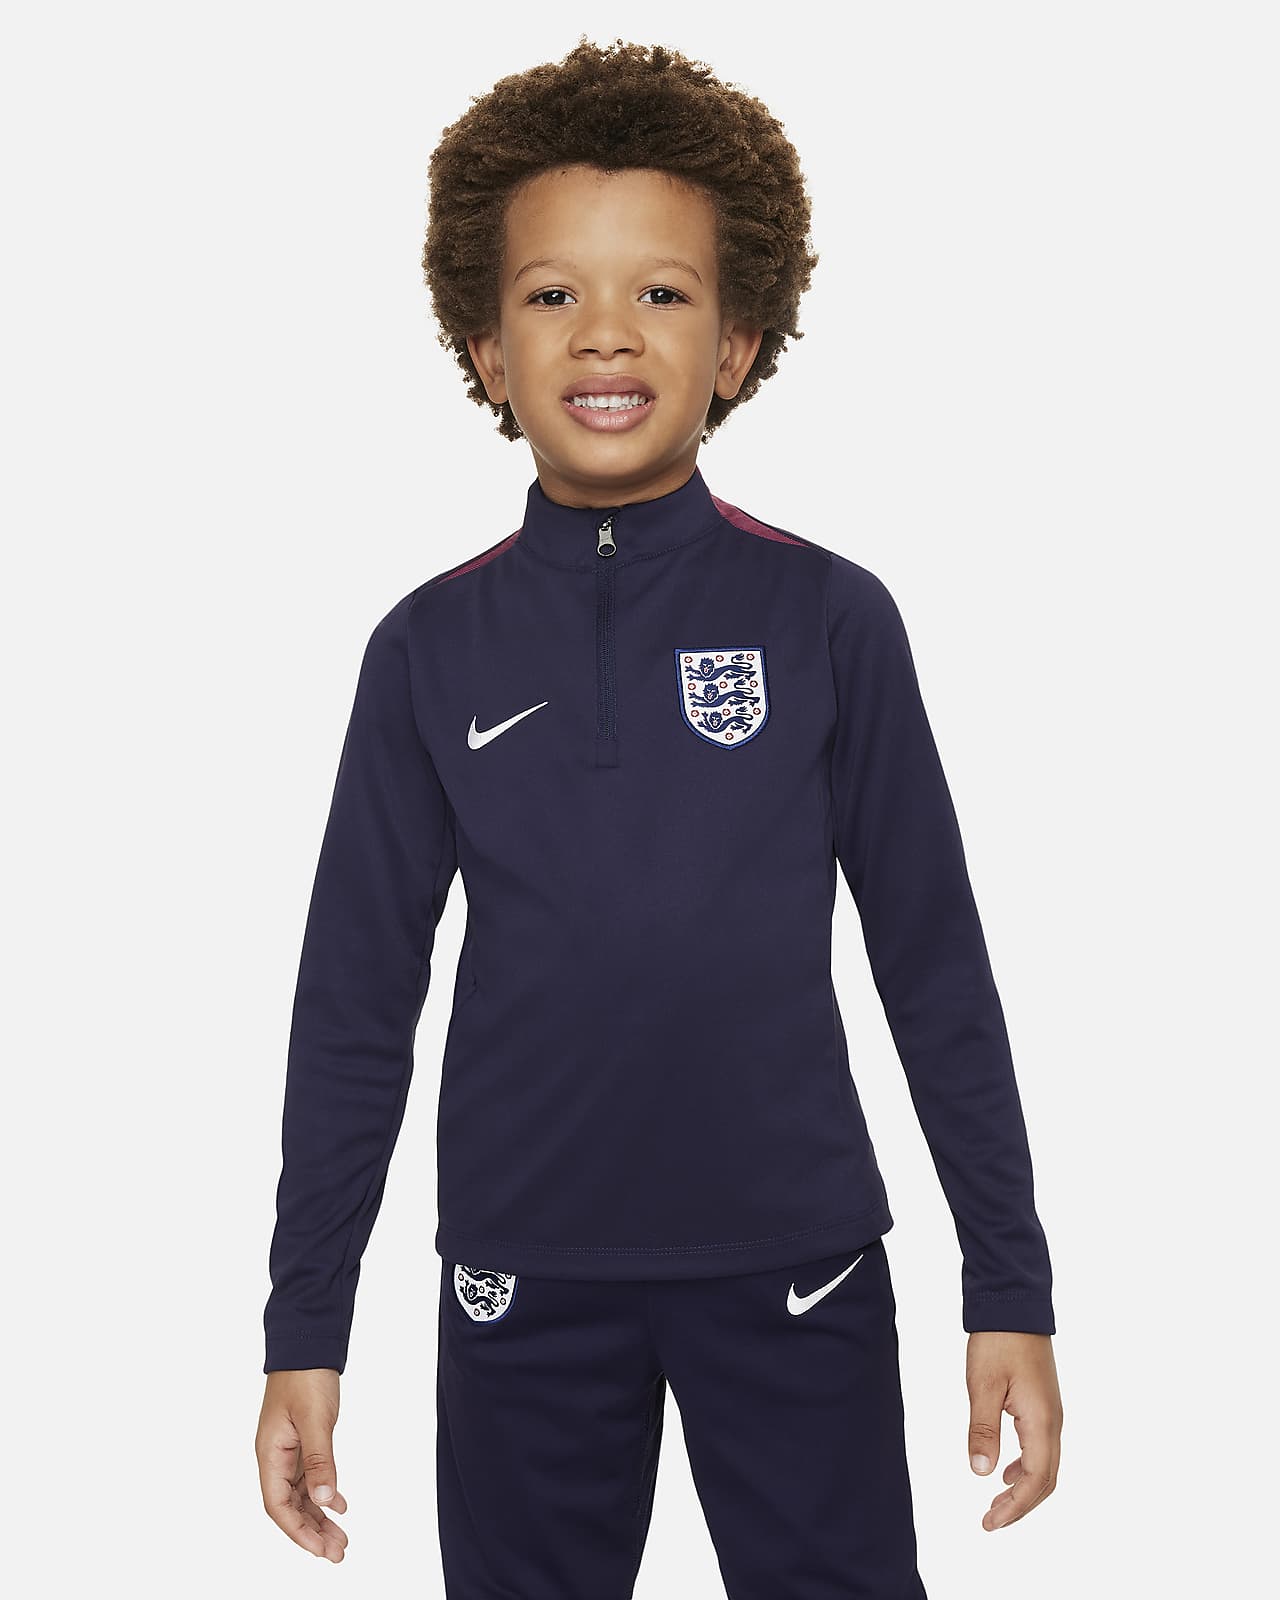 Maglia da calcio per allenamento Nike Dri-FIT Inghilterra Academy Pro – Bambino/a